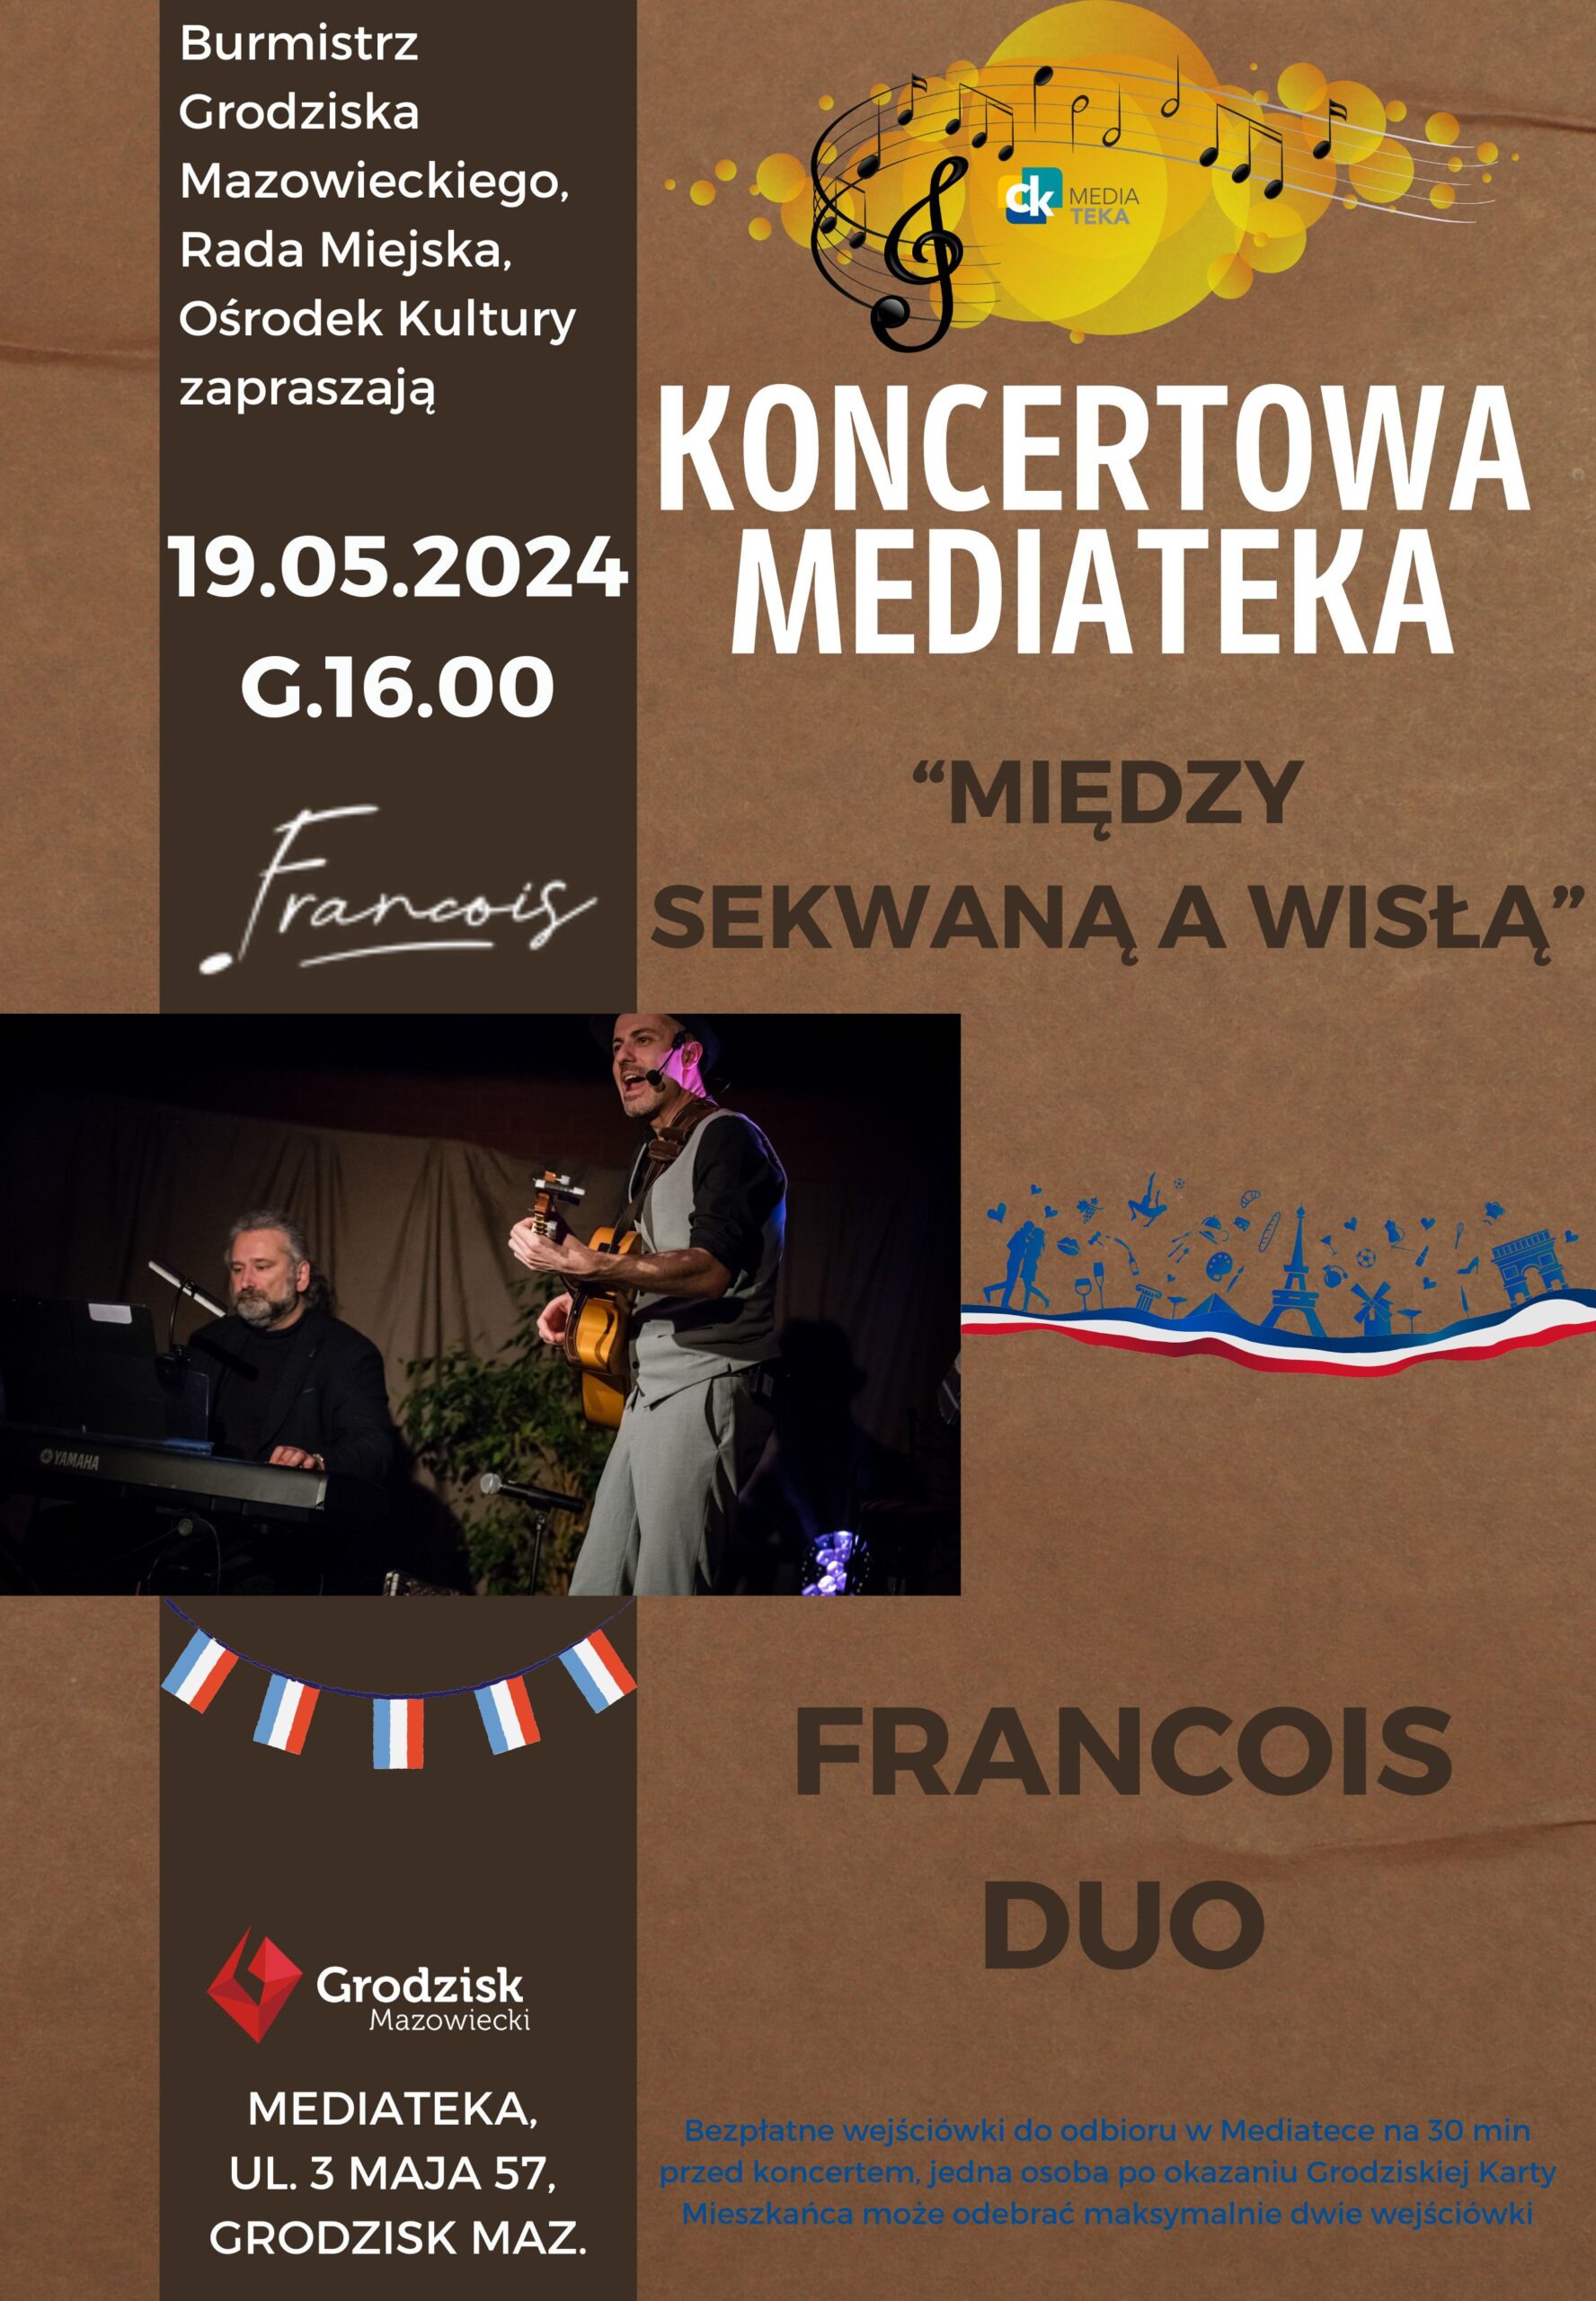 Koncertowa Mediateka “Między Sekwaną a Wisłą”